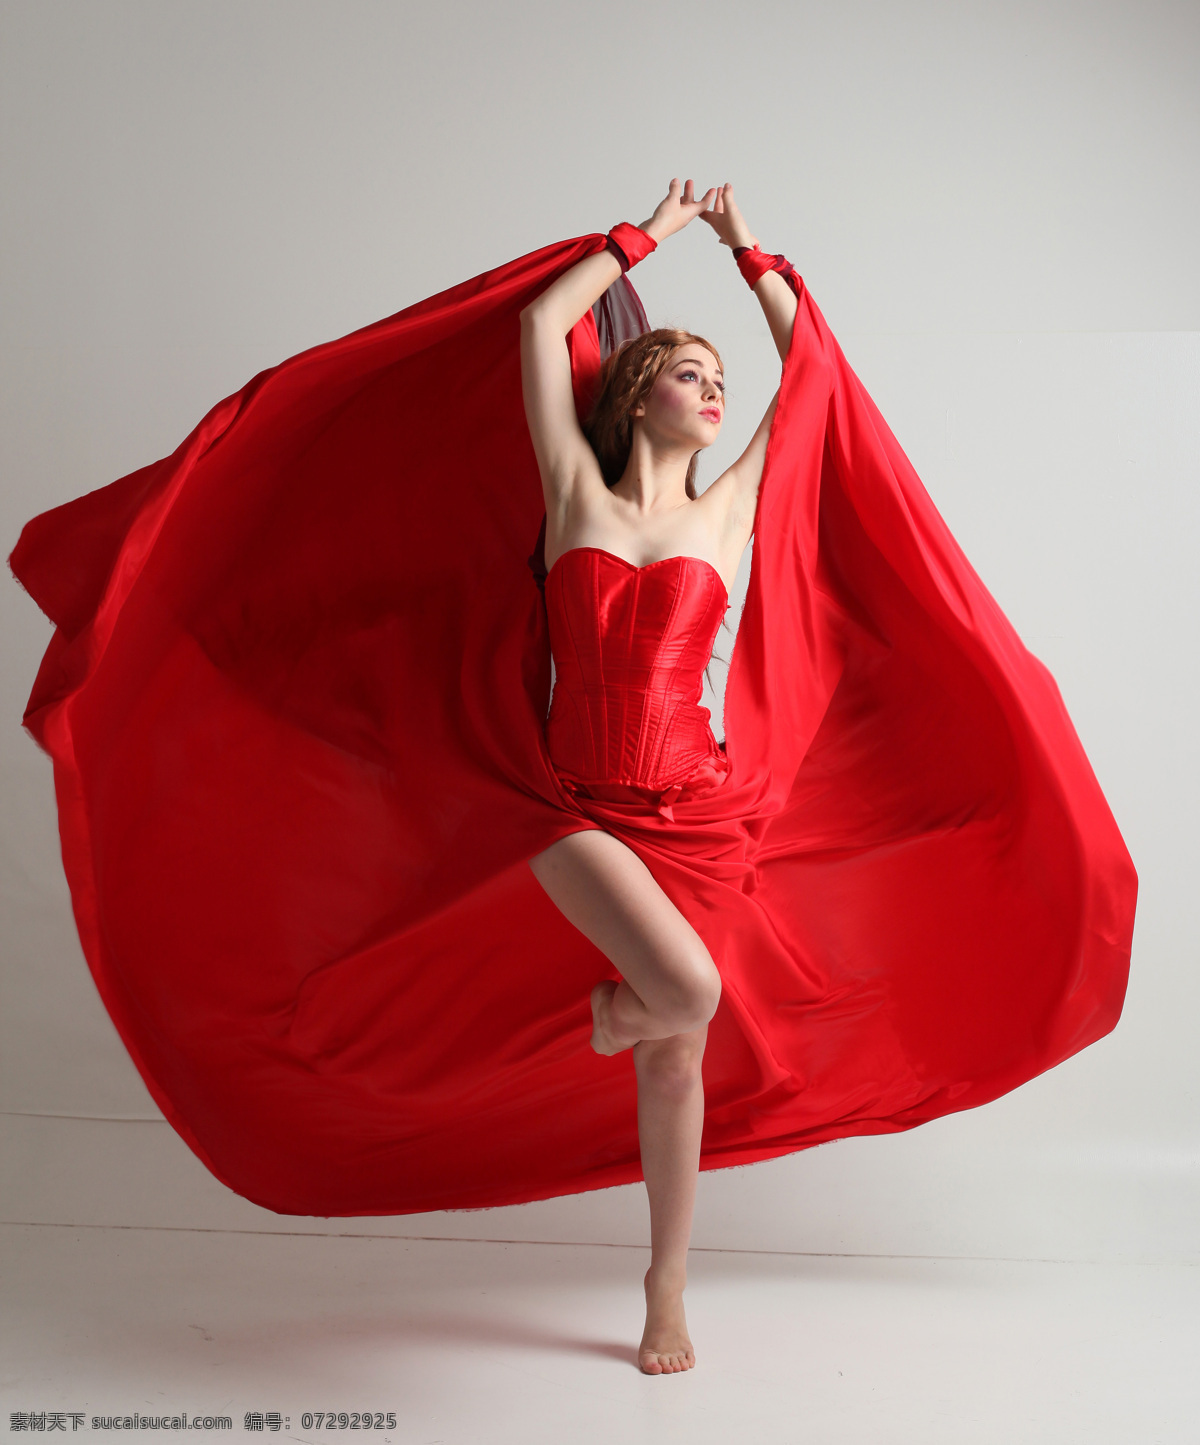 红色 人体艺术 美女 裙装 人体 艺术摄影 红裙